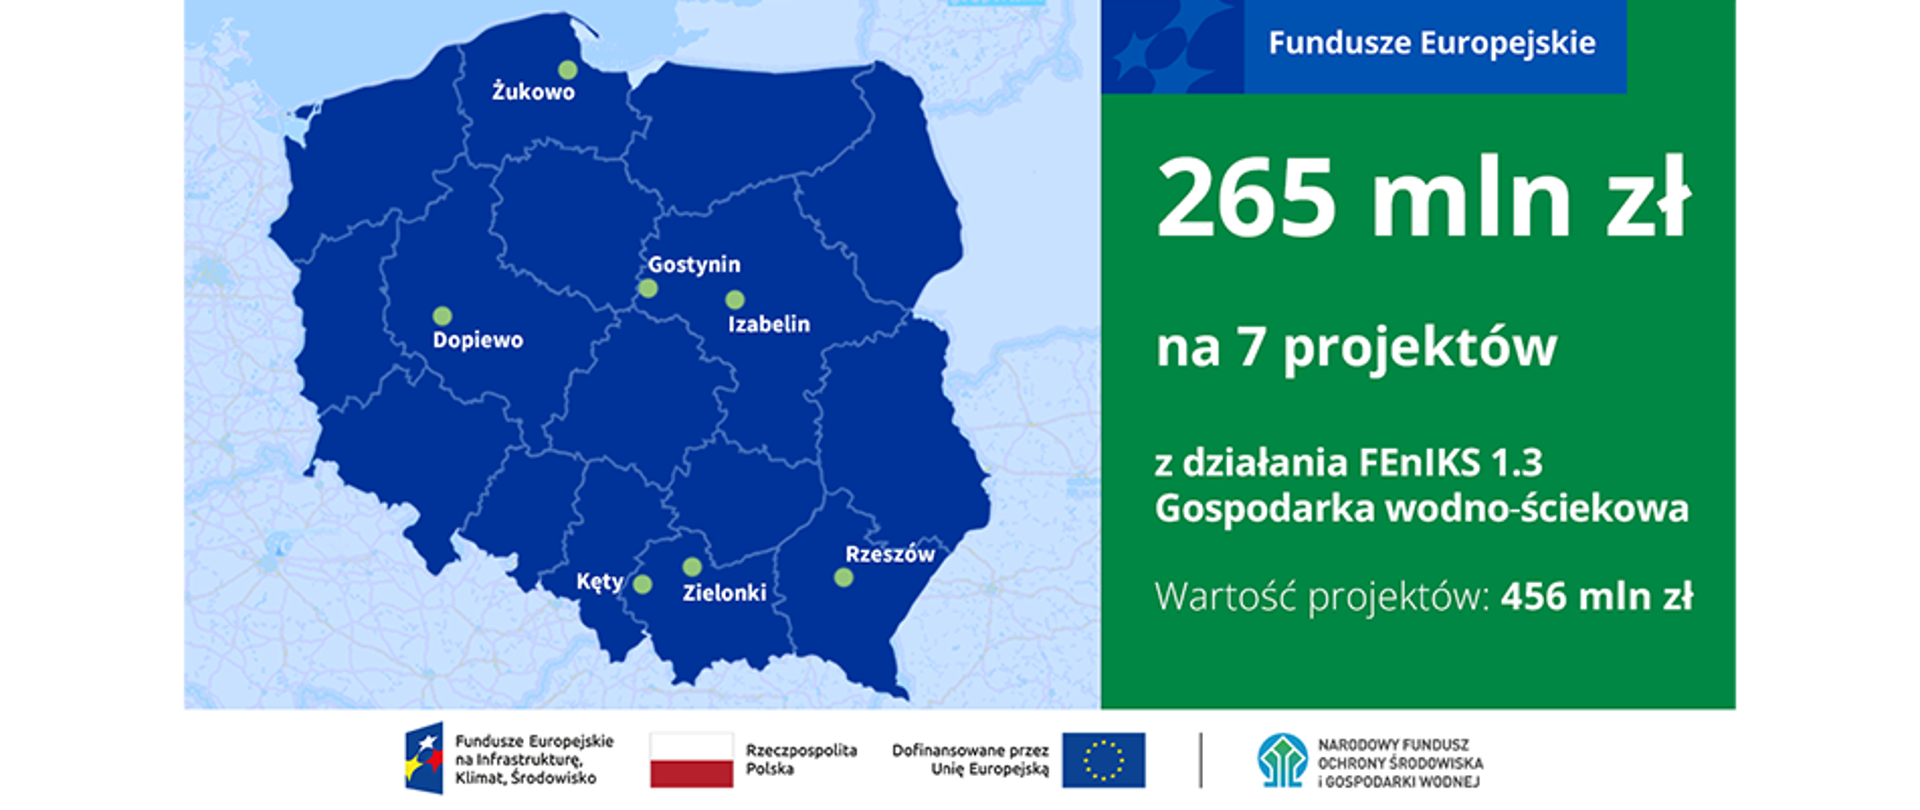 Infografika - po lewej mapa z oznaczonymi 7 miejscowościami, o których mowa w materiale, a po prawej oznakowanie Funduszy Europejskich i napis: "265 mln zł na 7 projektów z działania FEnIKS 1.3 Gospodarka wodno‐ściekowa Wartość projektów: 456 mln zł"